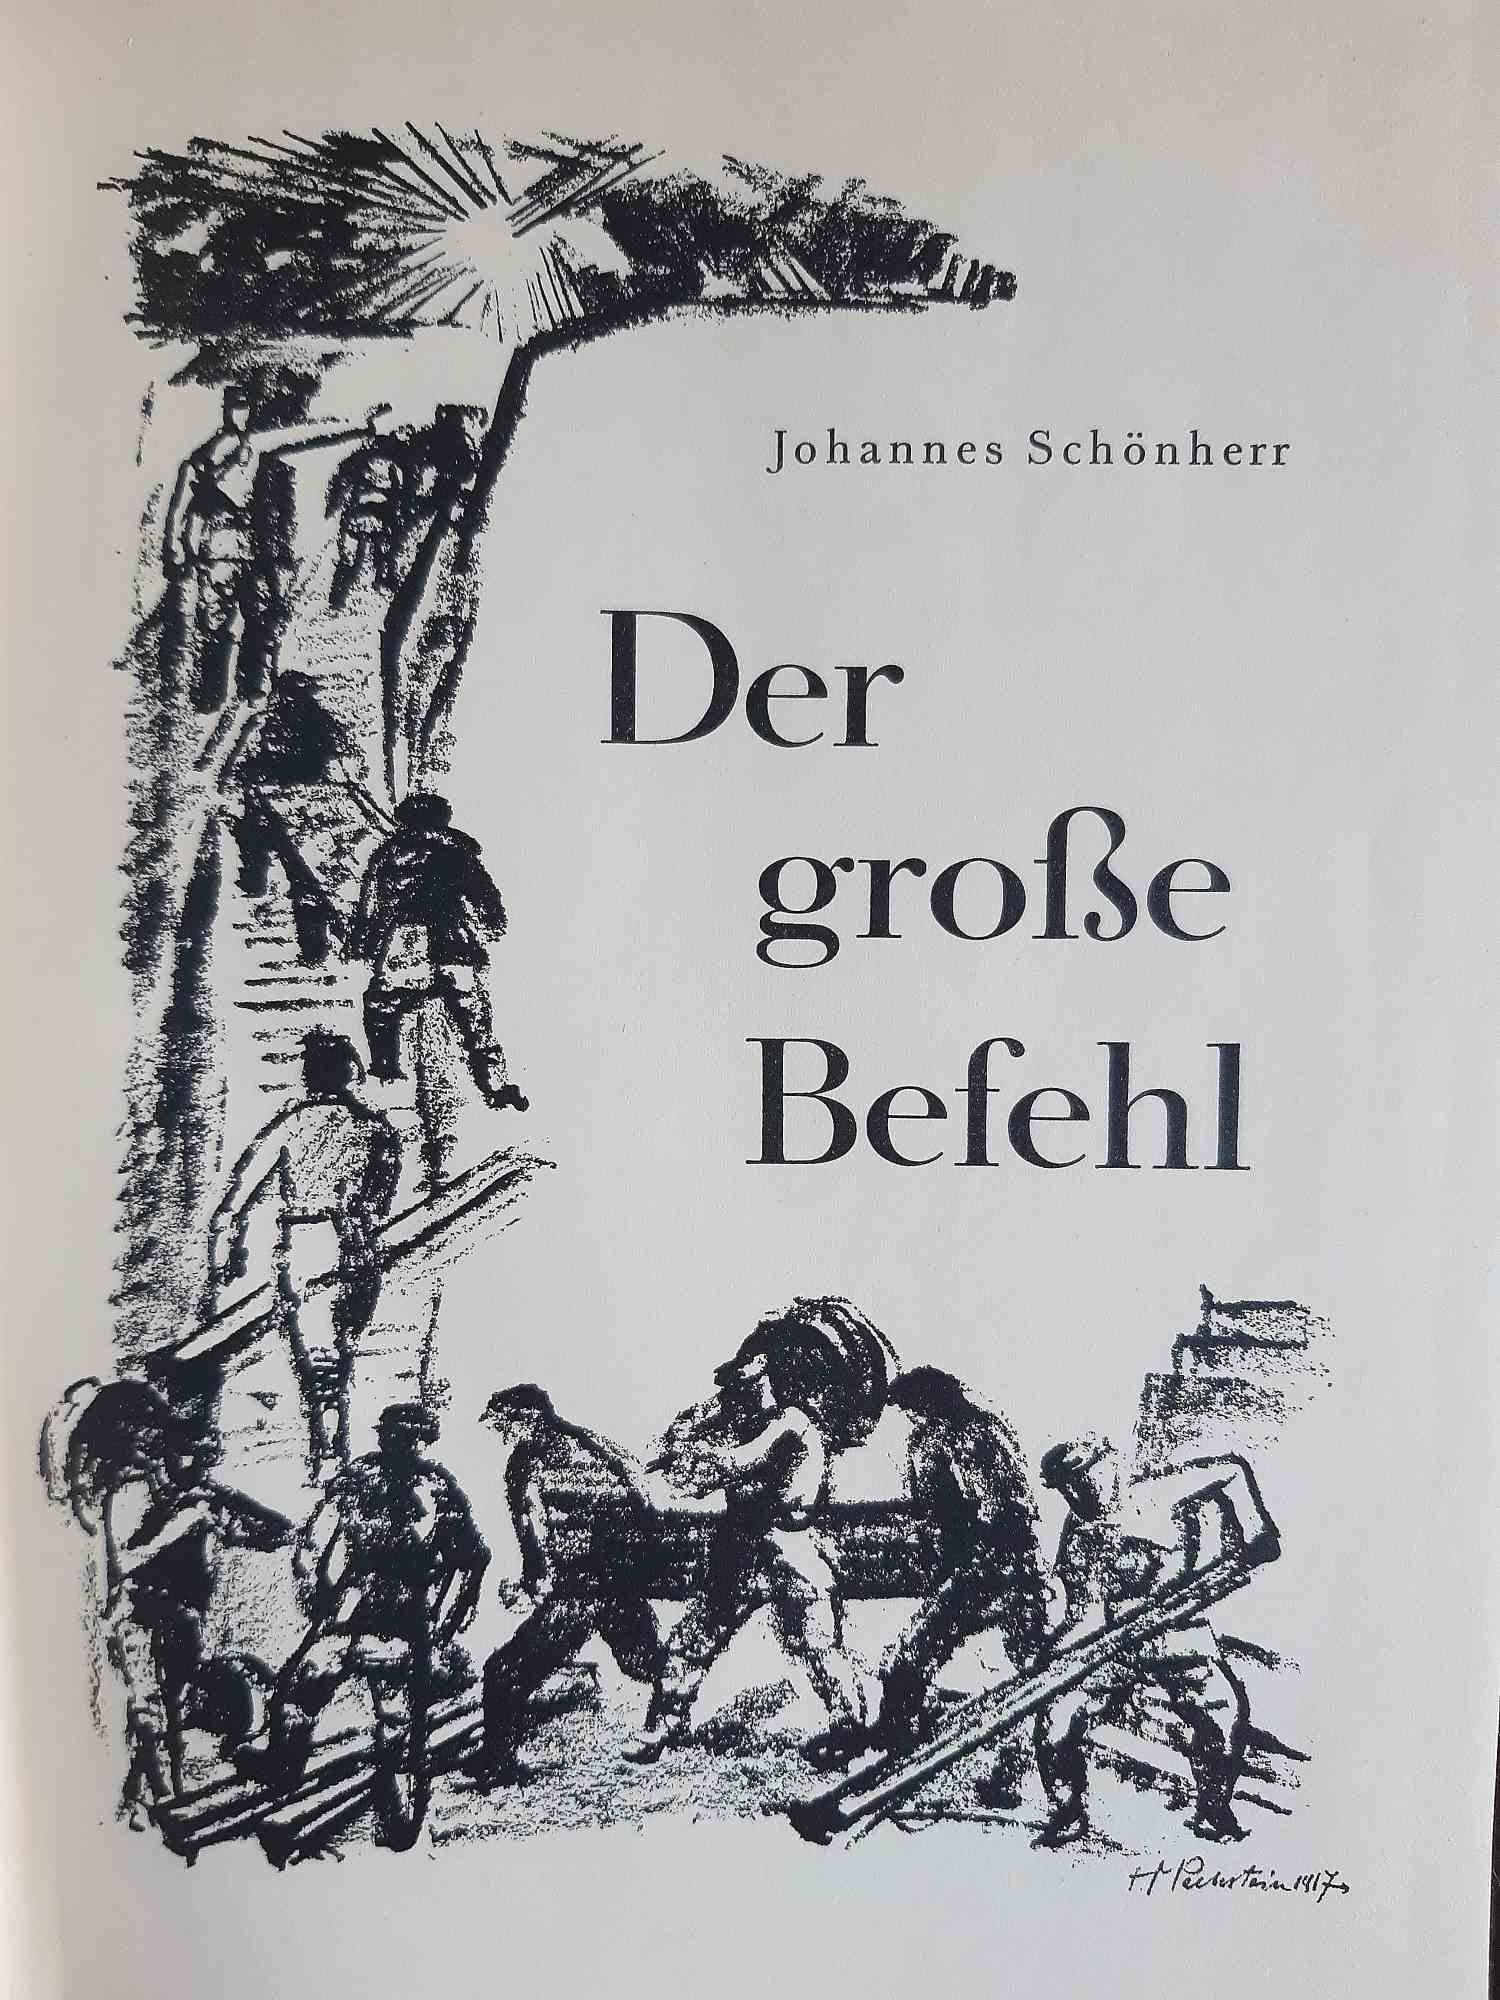 Die Grosse Befehl – illustriertes Buch von Max Pechstein – 1933 (Expressionismus), Print, von Hermann Max Pechstein